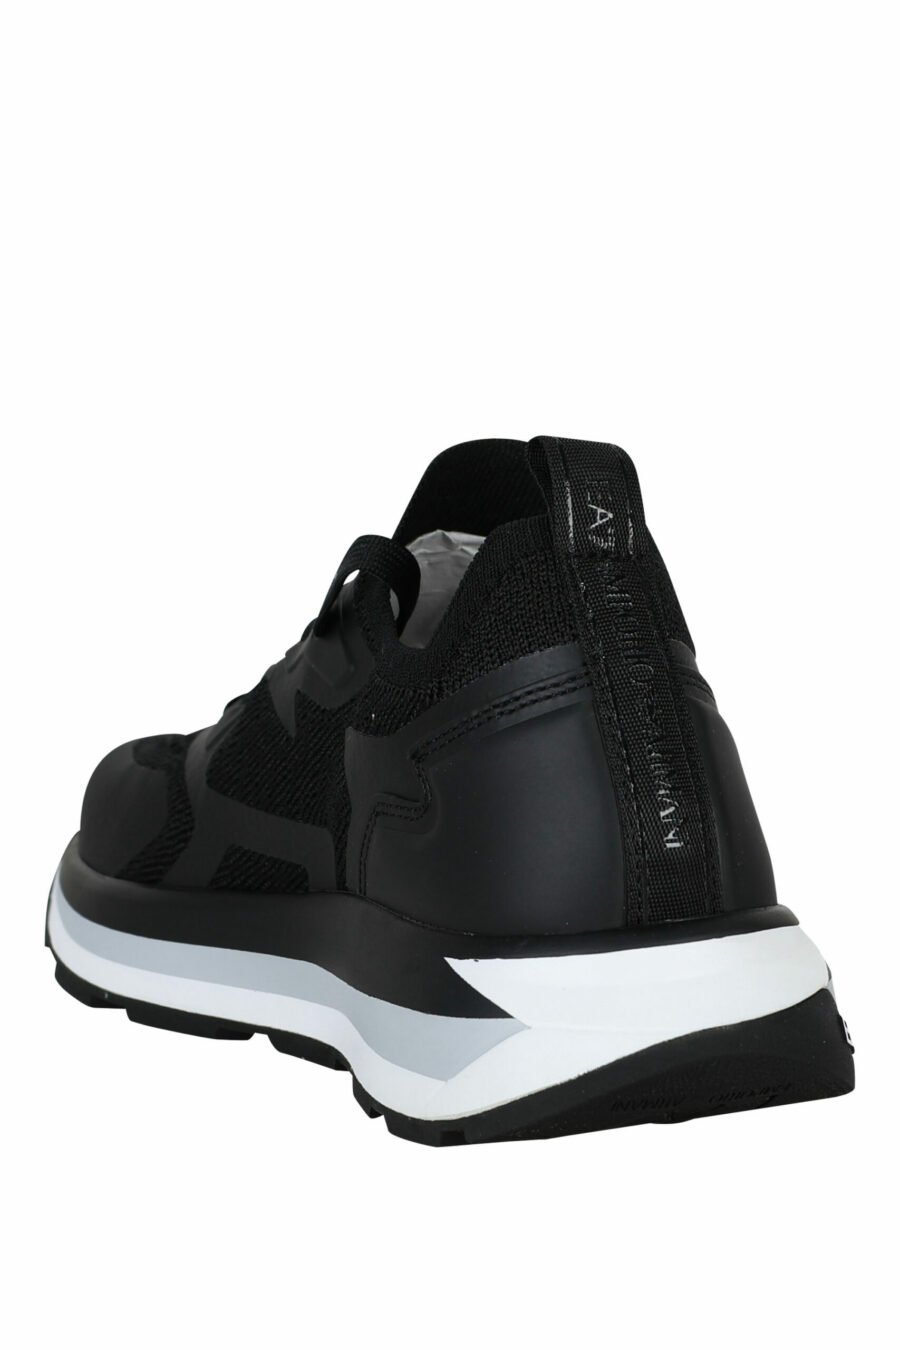 Zapatillas negras con maxilogo "lux identity" blanco y suela blanca - 8057163136925 3 scaled